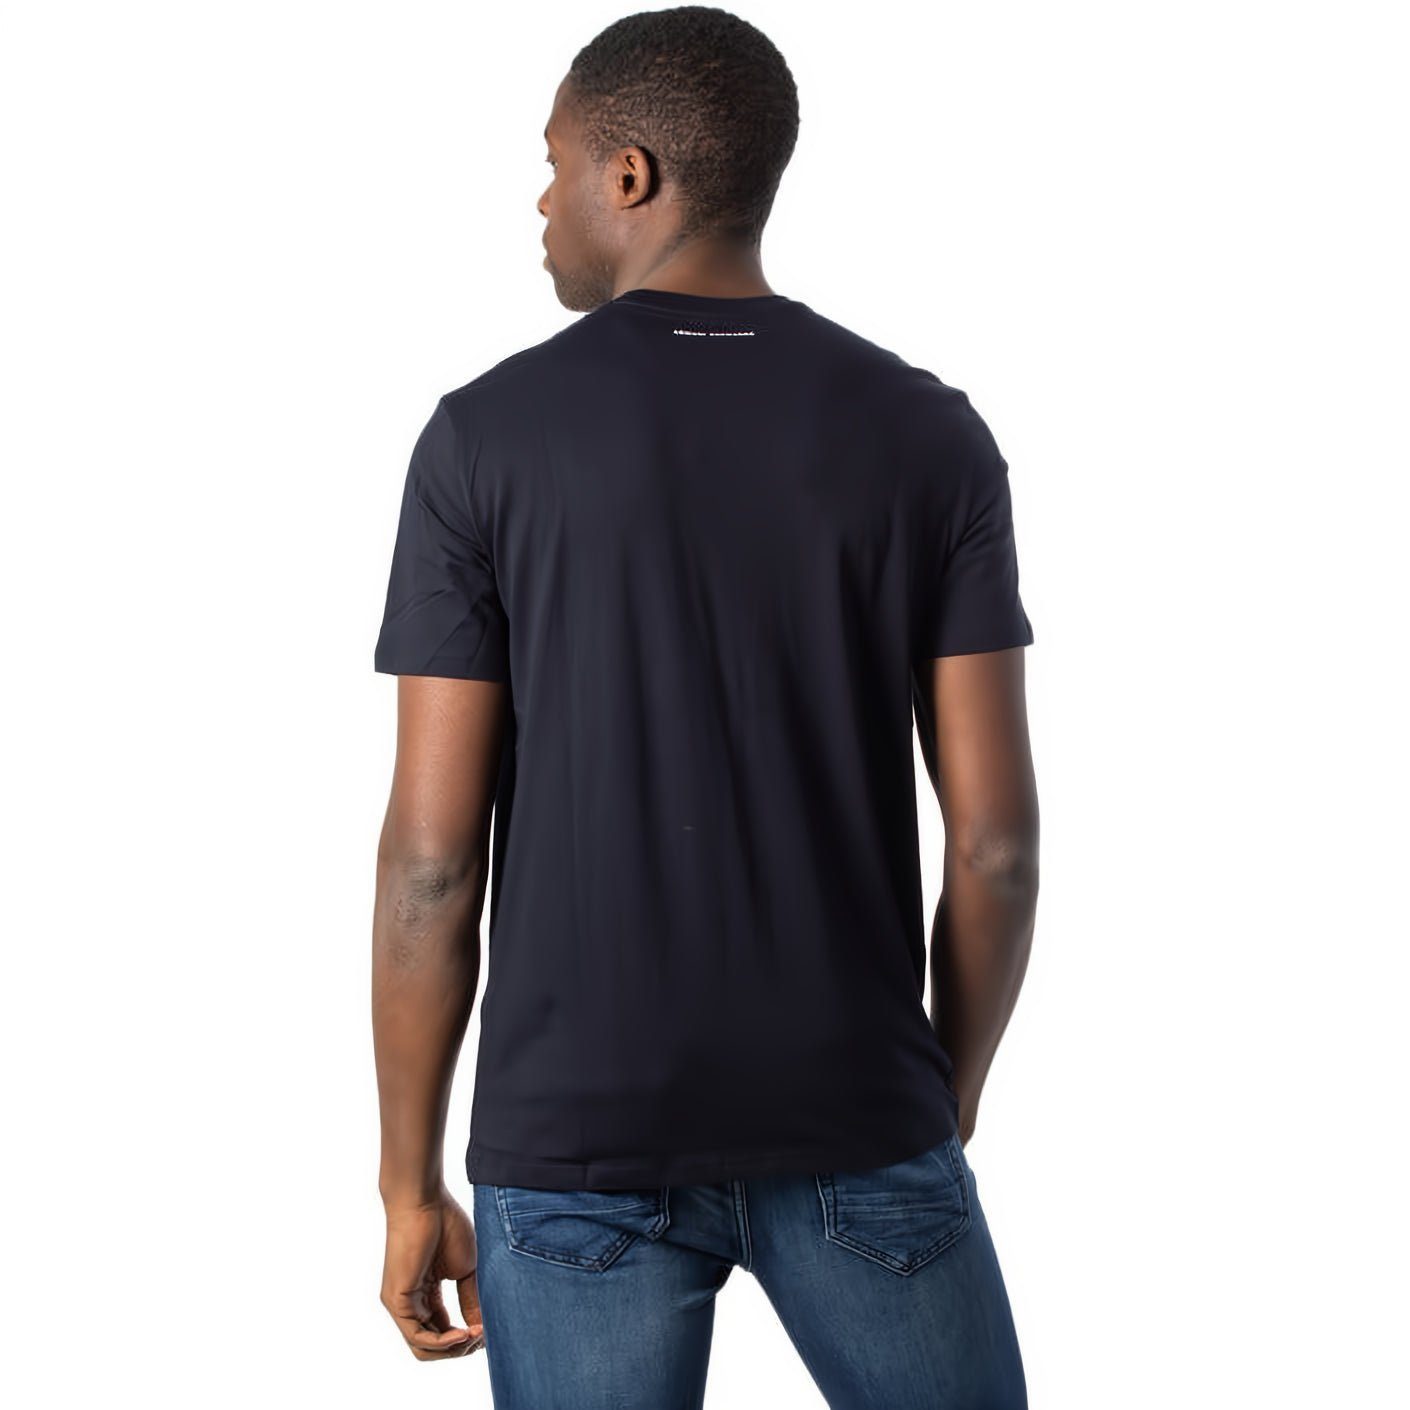 ARMANI EXCHANGE T-Shirt Rundhals, kurzarm, Must-Have Ihre für ein Kleidungskollektion